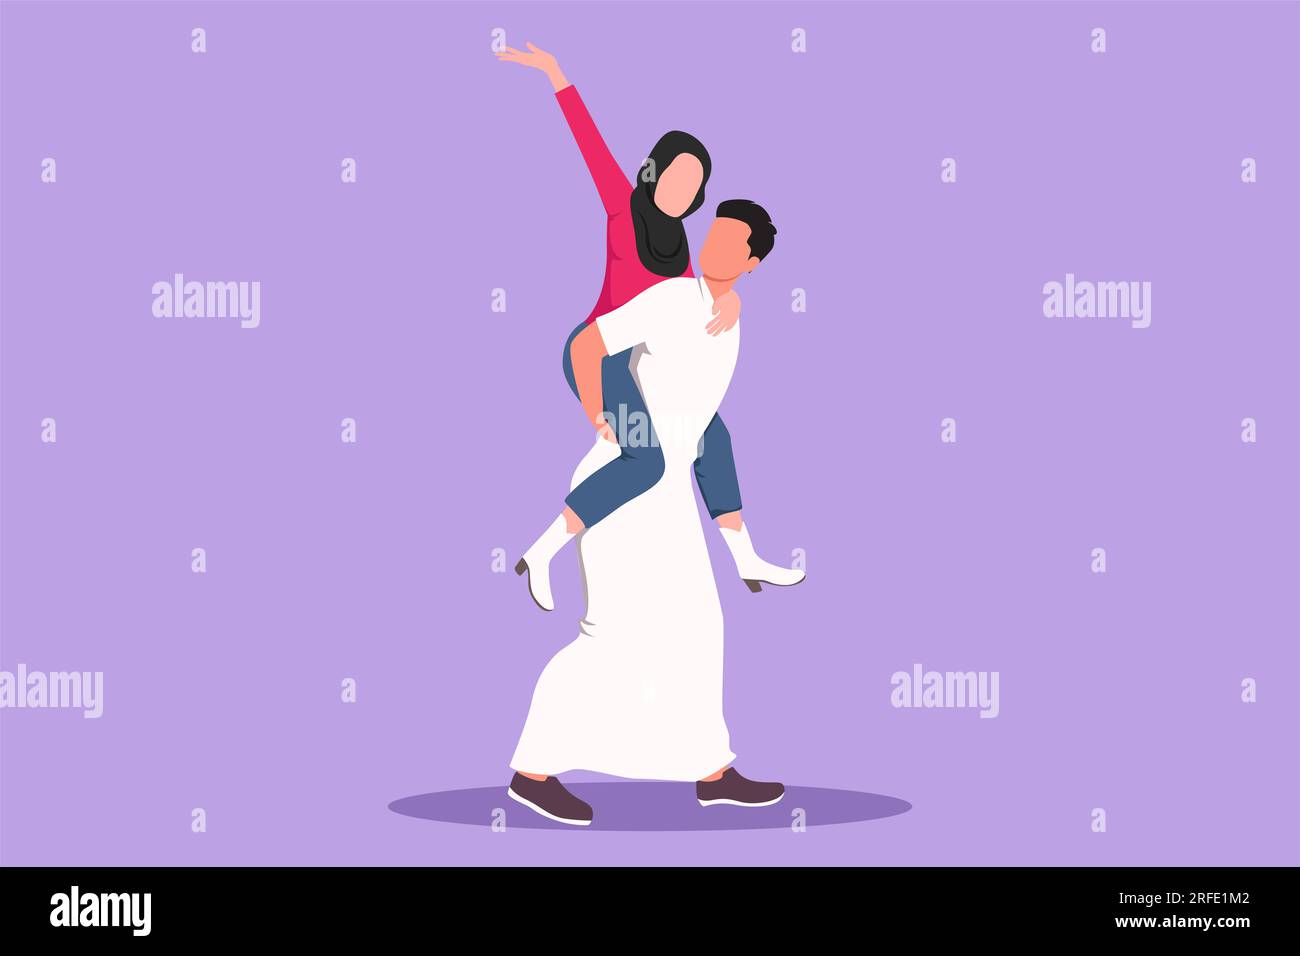 Cartoon-Figur, die ein Teenager-Paar mit einem Mann zeichnet, der während  des Musikfestivals eine Frau auf dem Rücken trägt. Ein romantisches  arabisches Paar, das verliebt ist. Glücklicher Kerl und glückliches Mädchen  Stockfotografie 